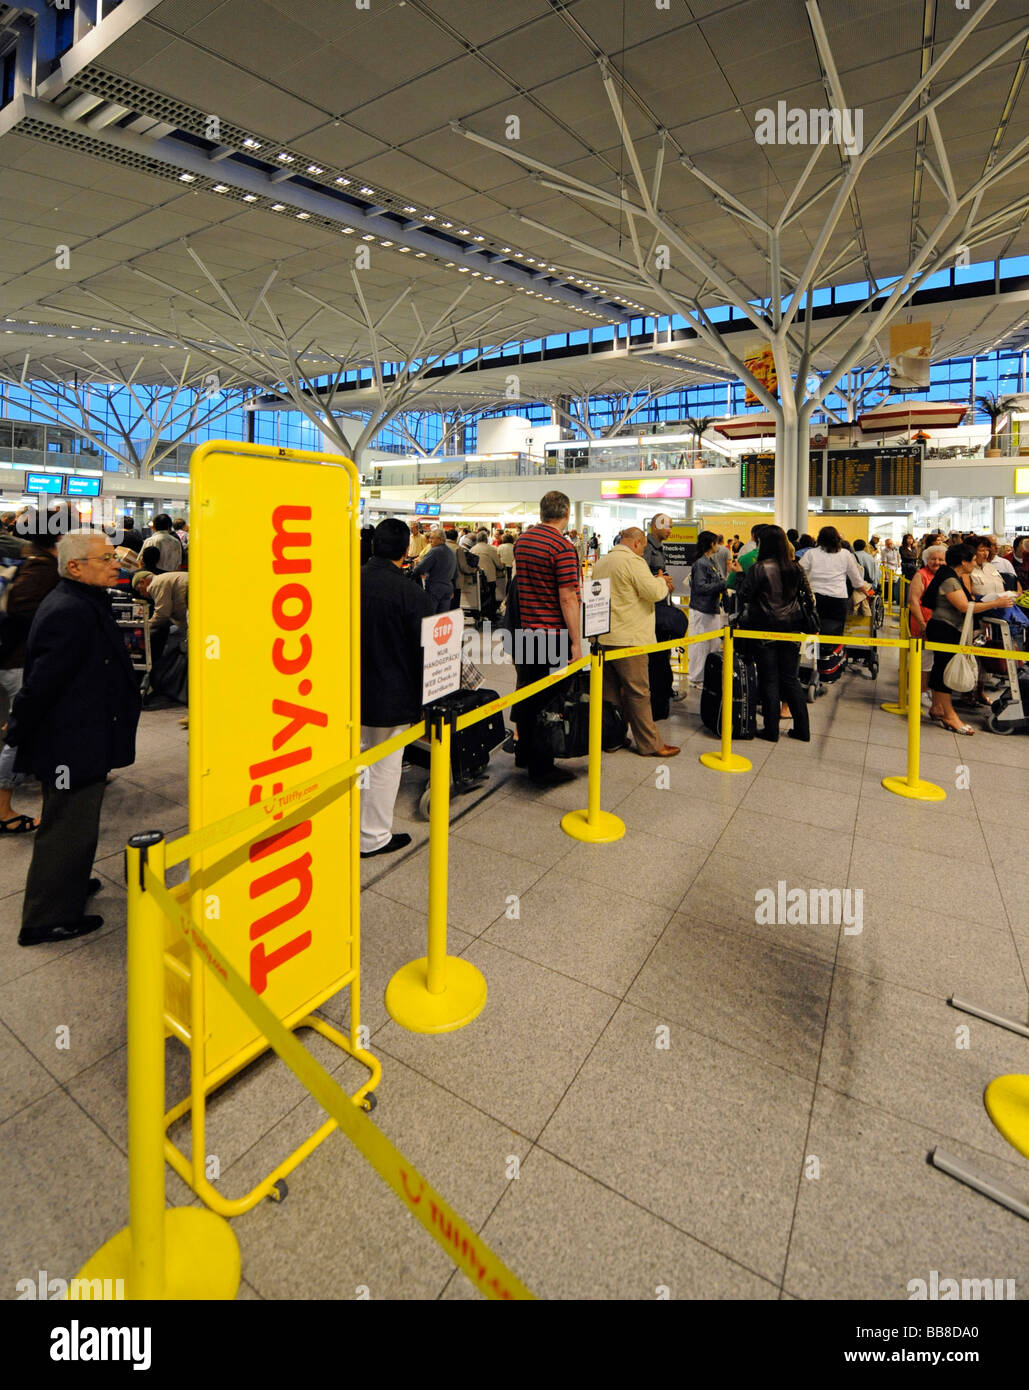 Reisende warten in Warteschlangen am Check-in-Schalter der TUI-Fly,  Flughafen Stuttgart, Baden-Württemberg, Deutschland, Europa Stockfotografie  - Alamy